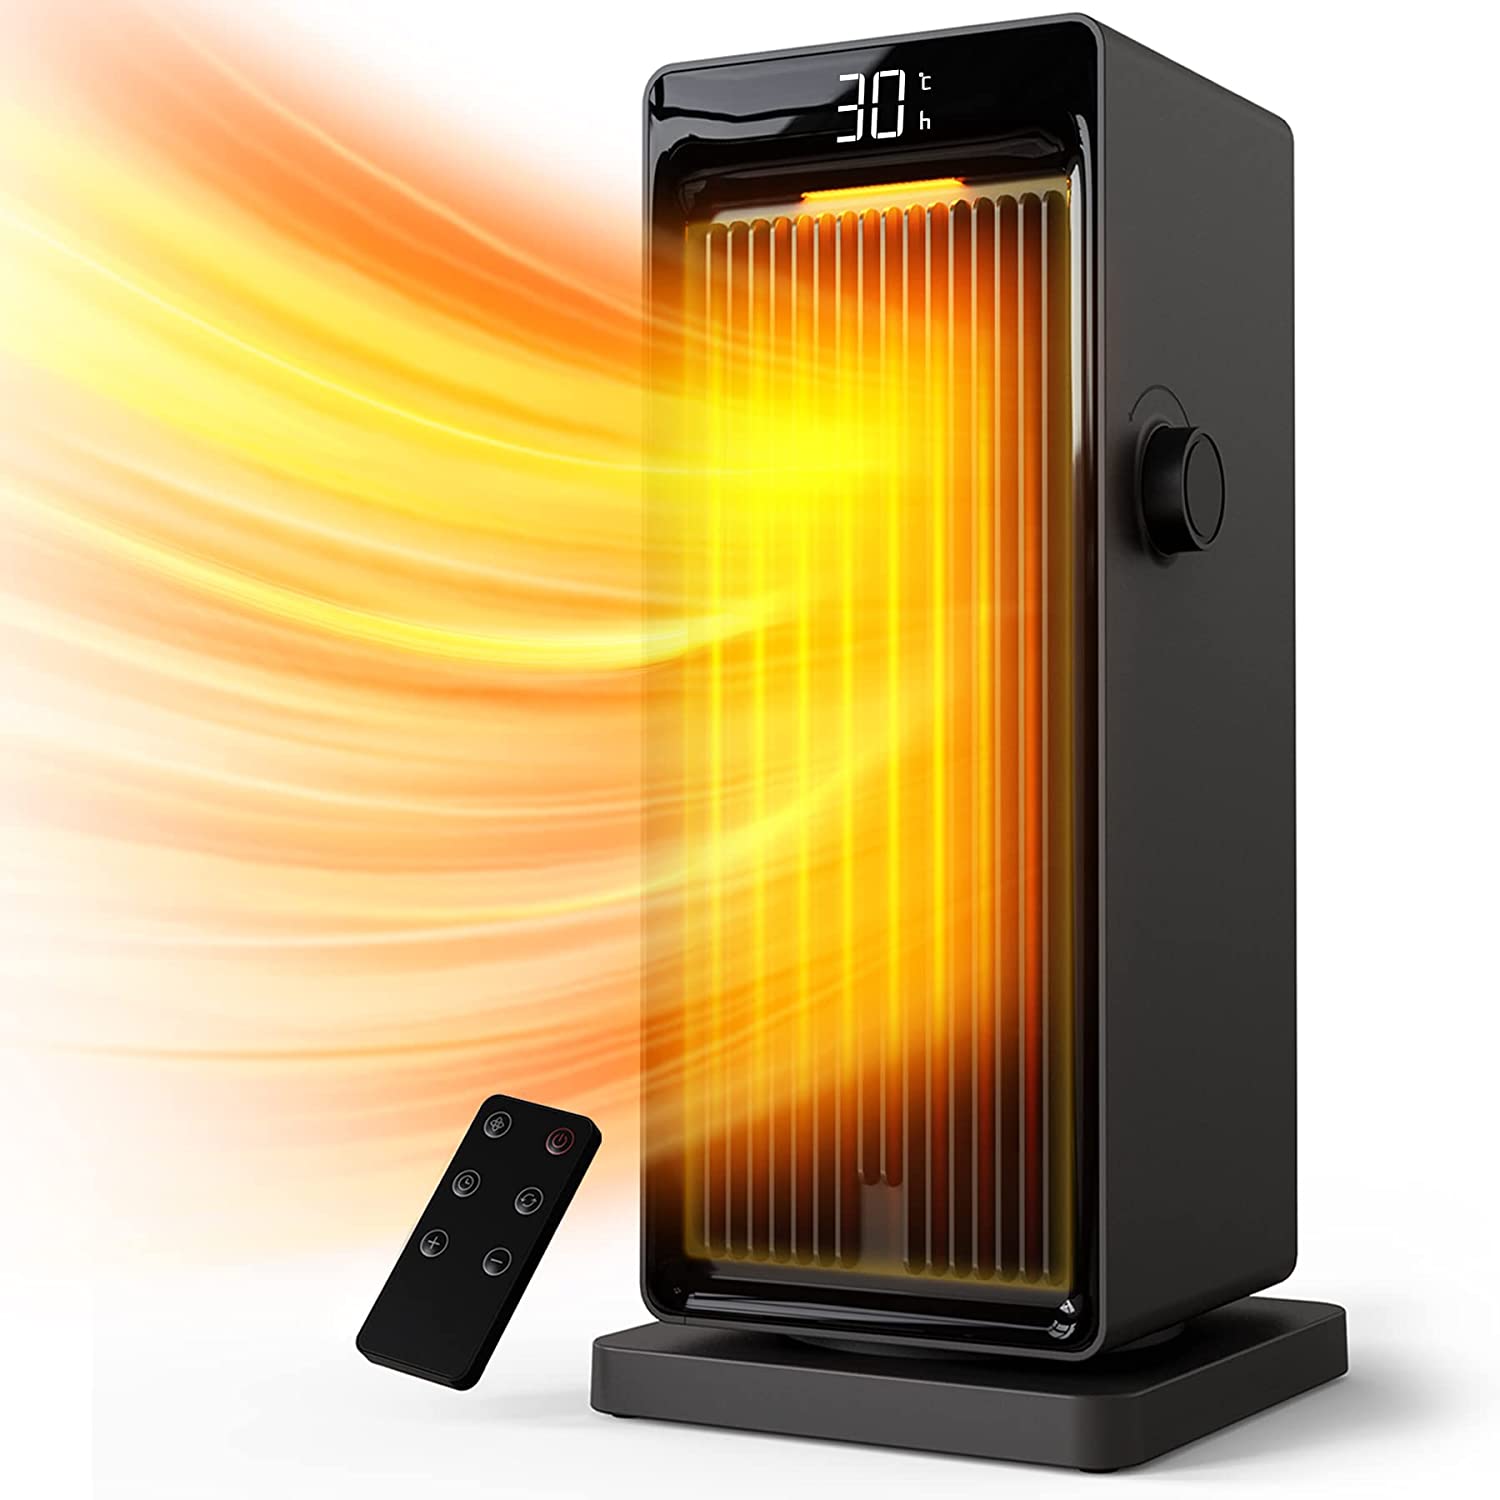 Stufa elettrica per riscaldare 50 mq: prezzi e consigli